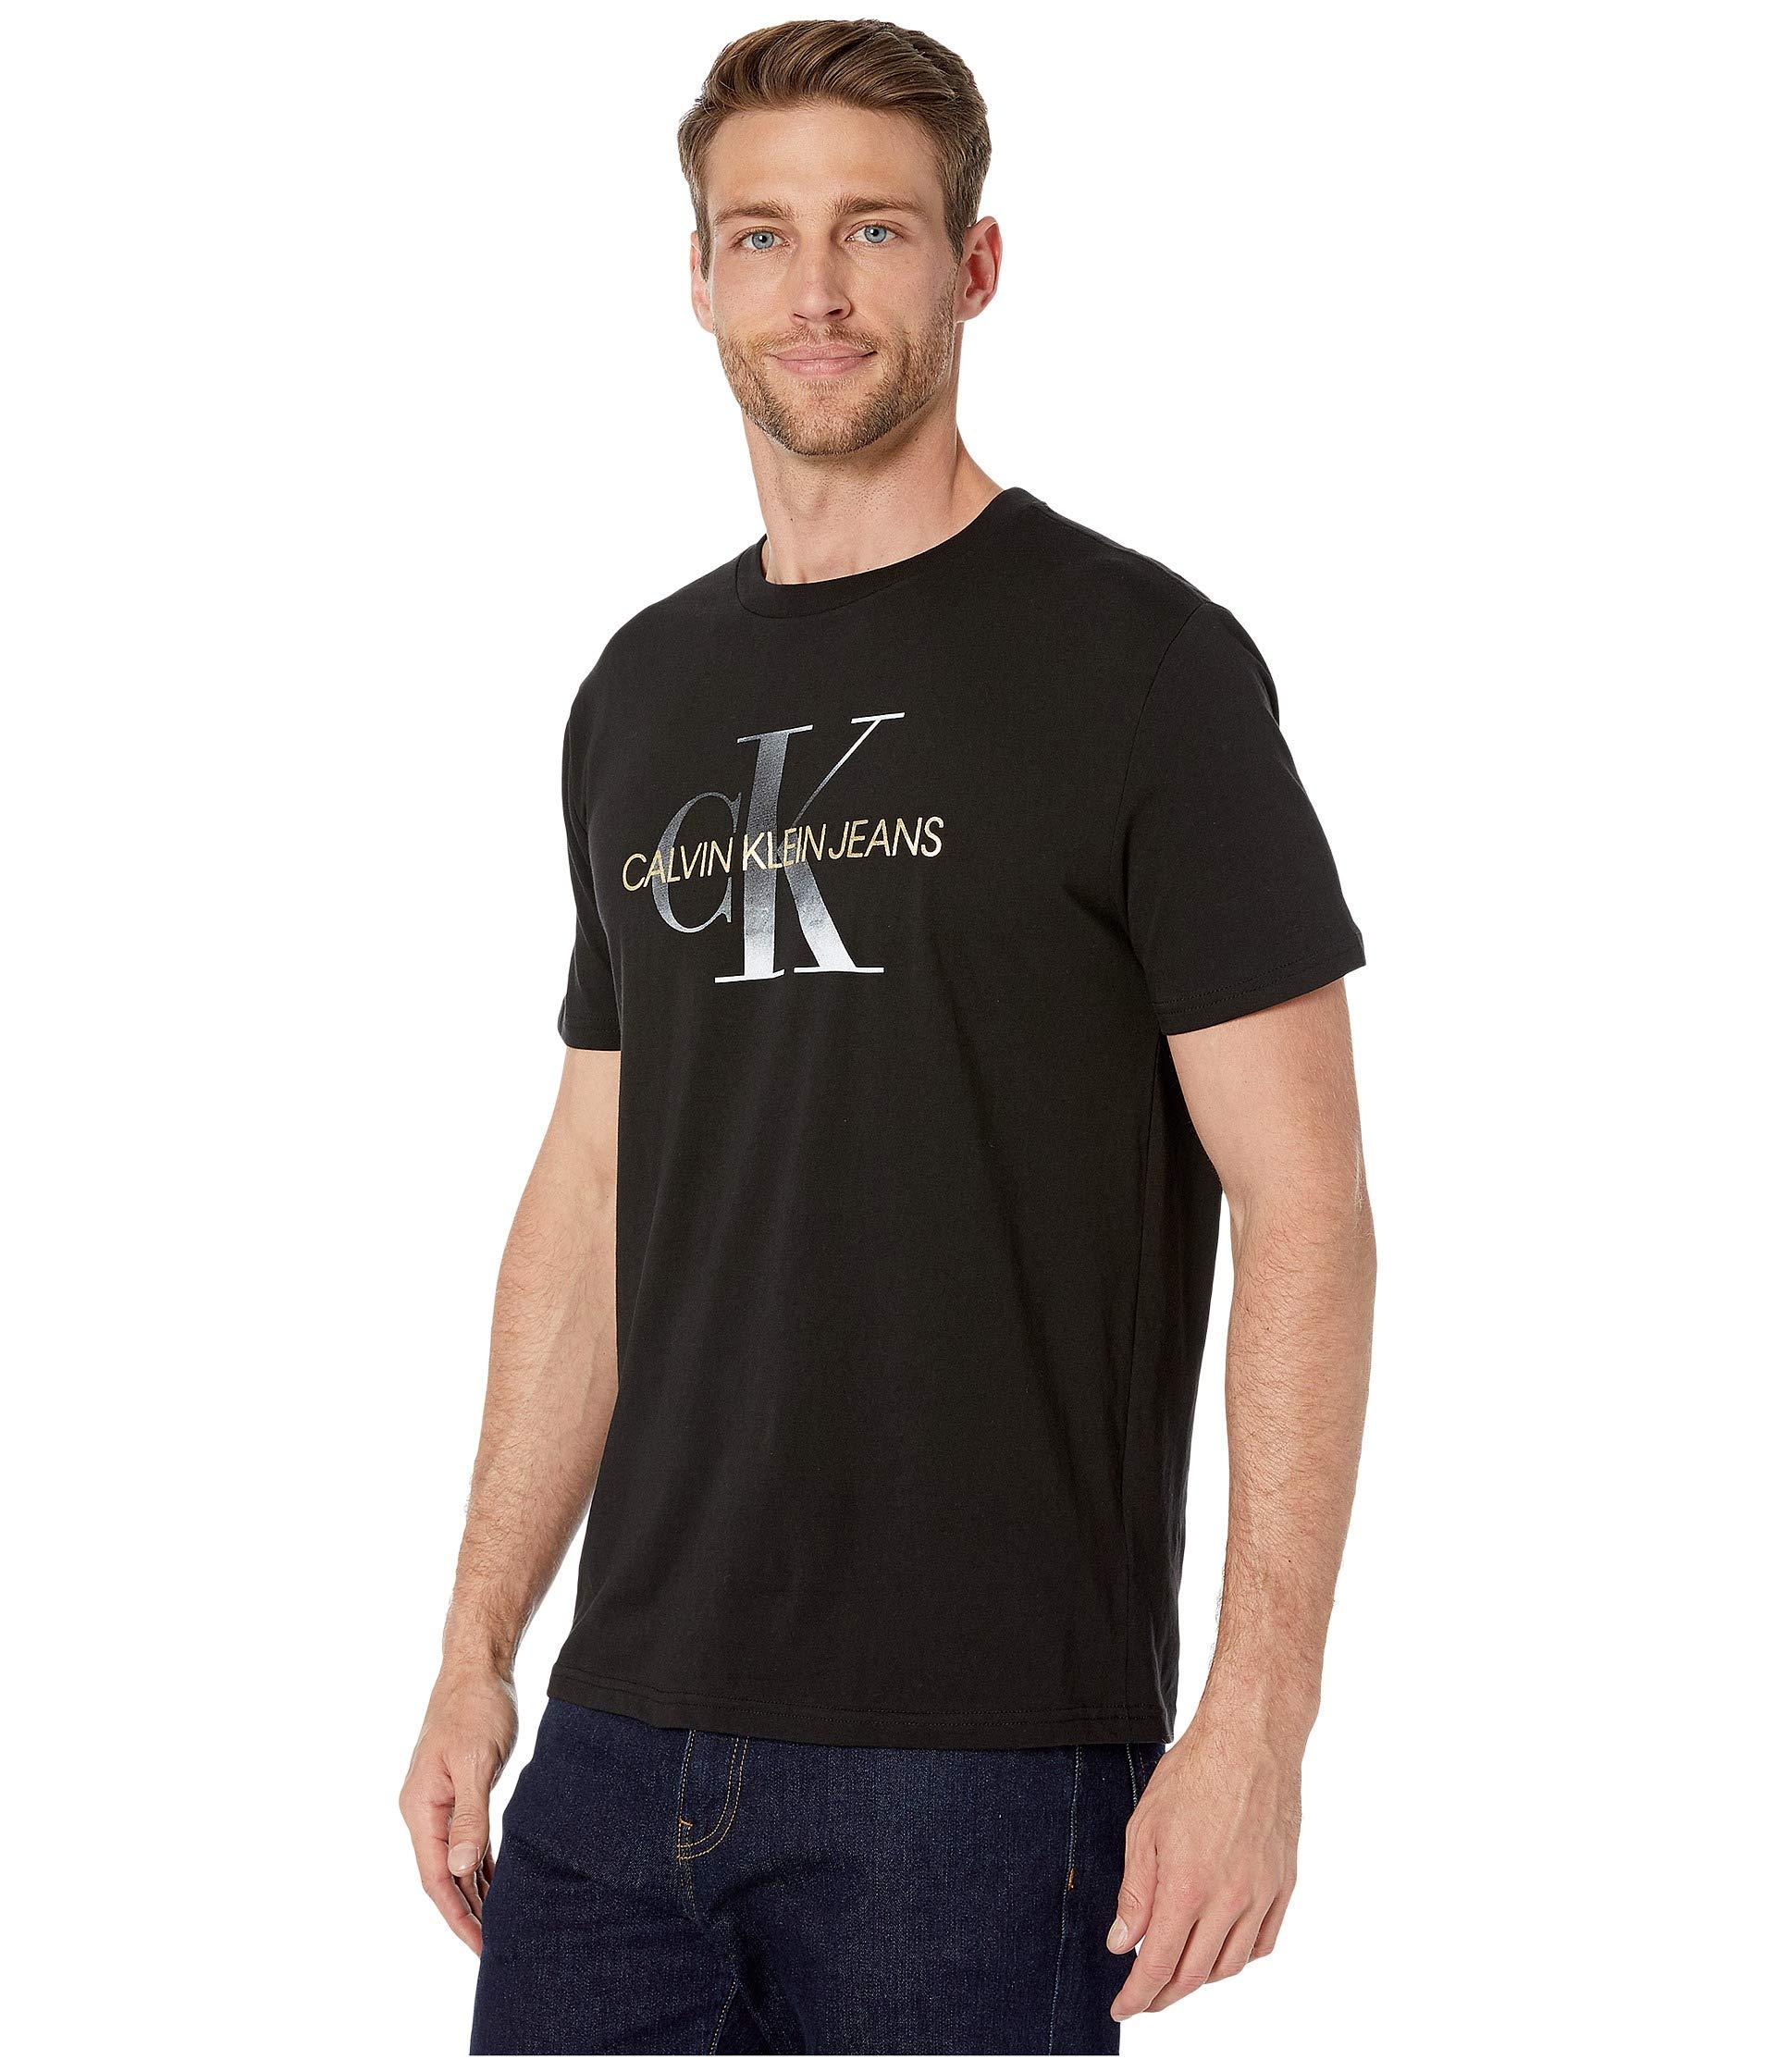 Calvin Klein Cotton Gold Monogram Tee in Black for Men - Save 26% - Lyst